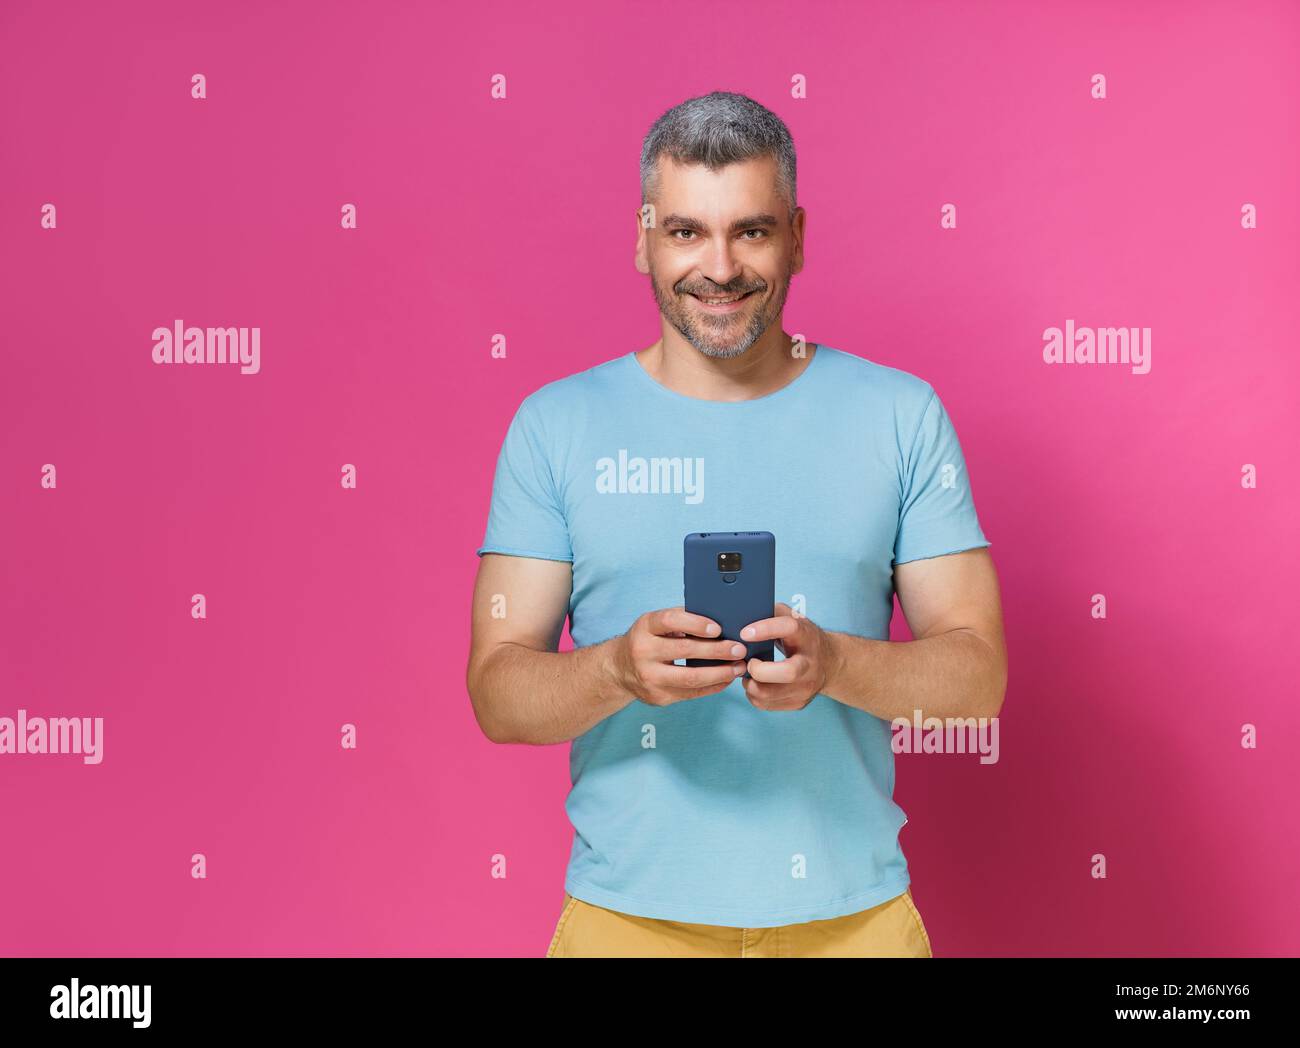 Allegro giovane uomo adulto 30s 40s in casual vestire tenere smartphone lettura di testo o la navigazione online isolato su sfondo rosa. MUC Foto Stock